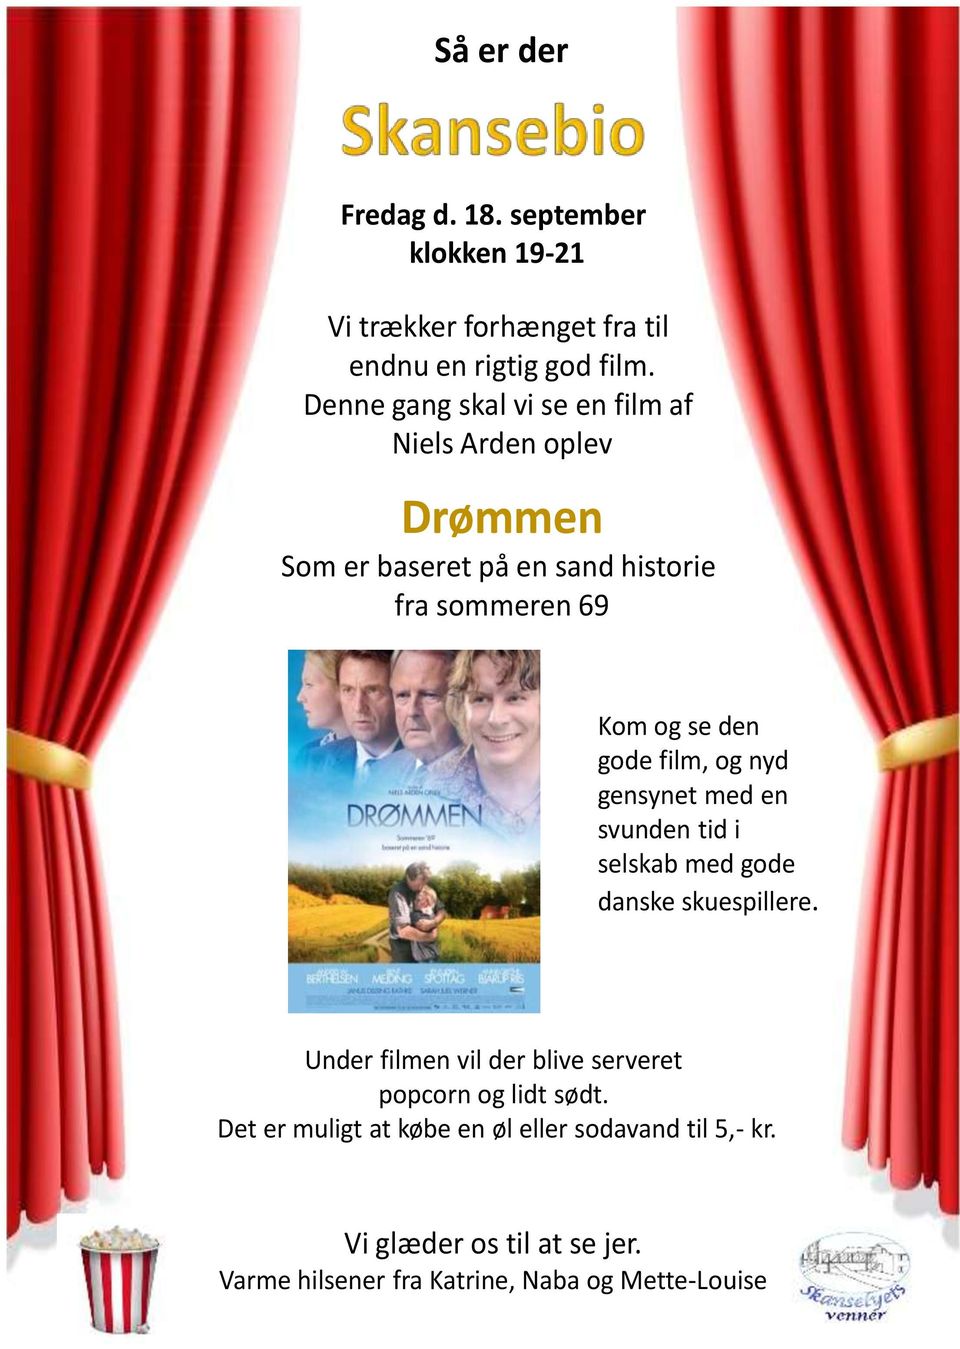 gode film, og nyd gensynet med en svunden tid i selskab med gode danske skuespillere.